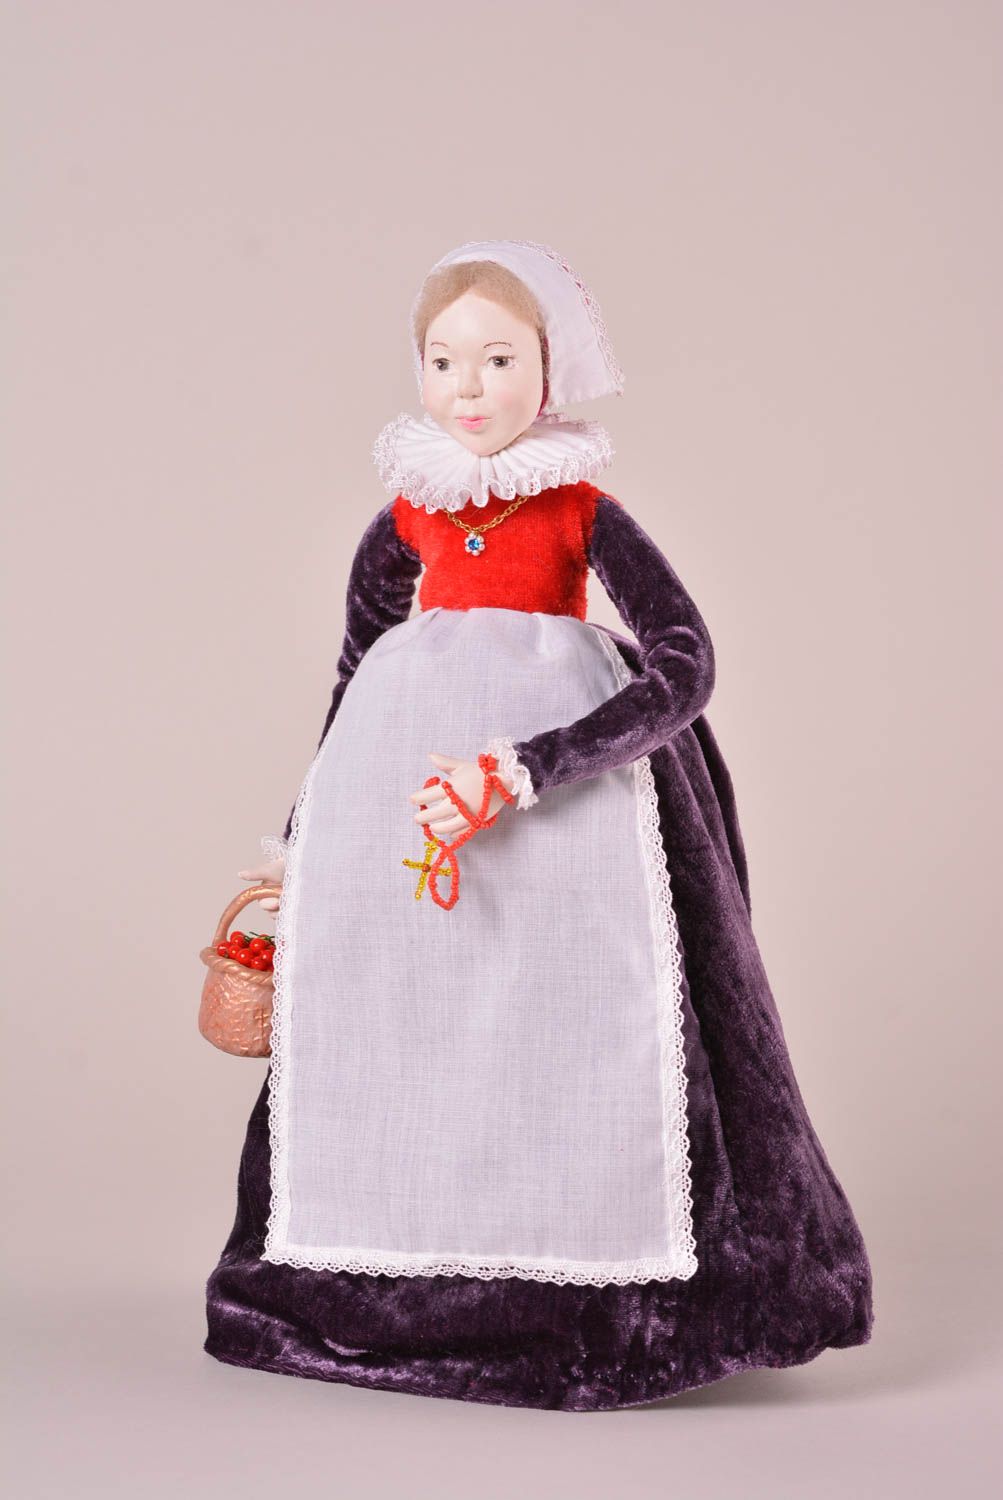 Авторская кукла игрушка ручной работы дизайнерская кукла из пластики и текстиля фото 1